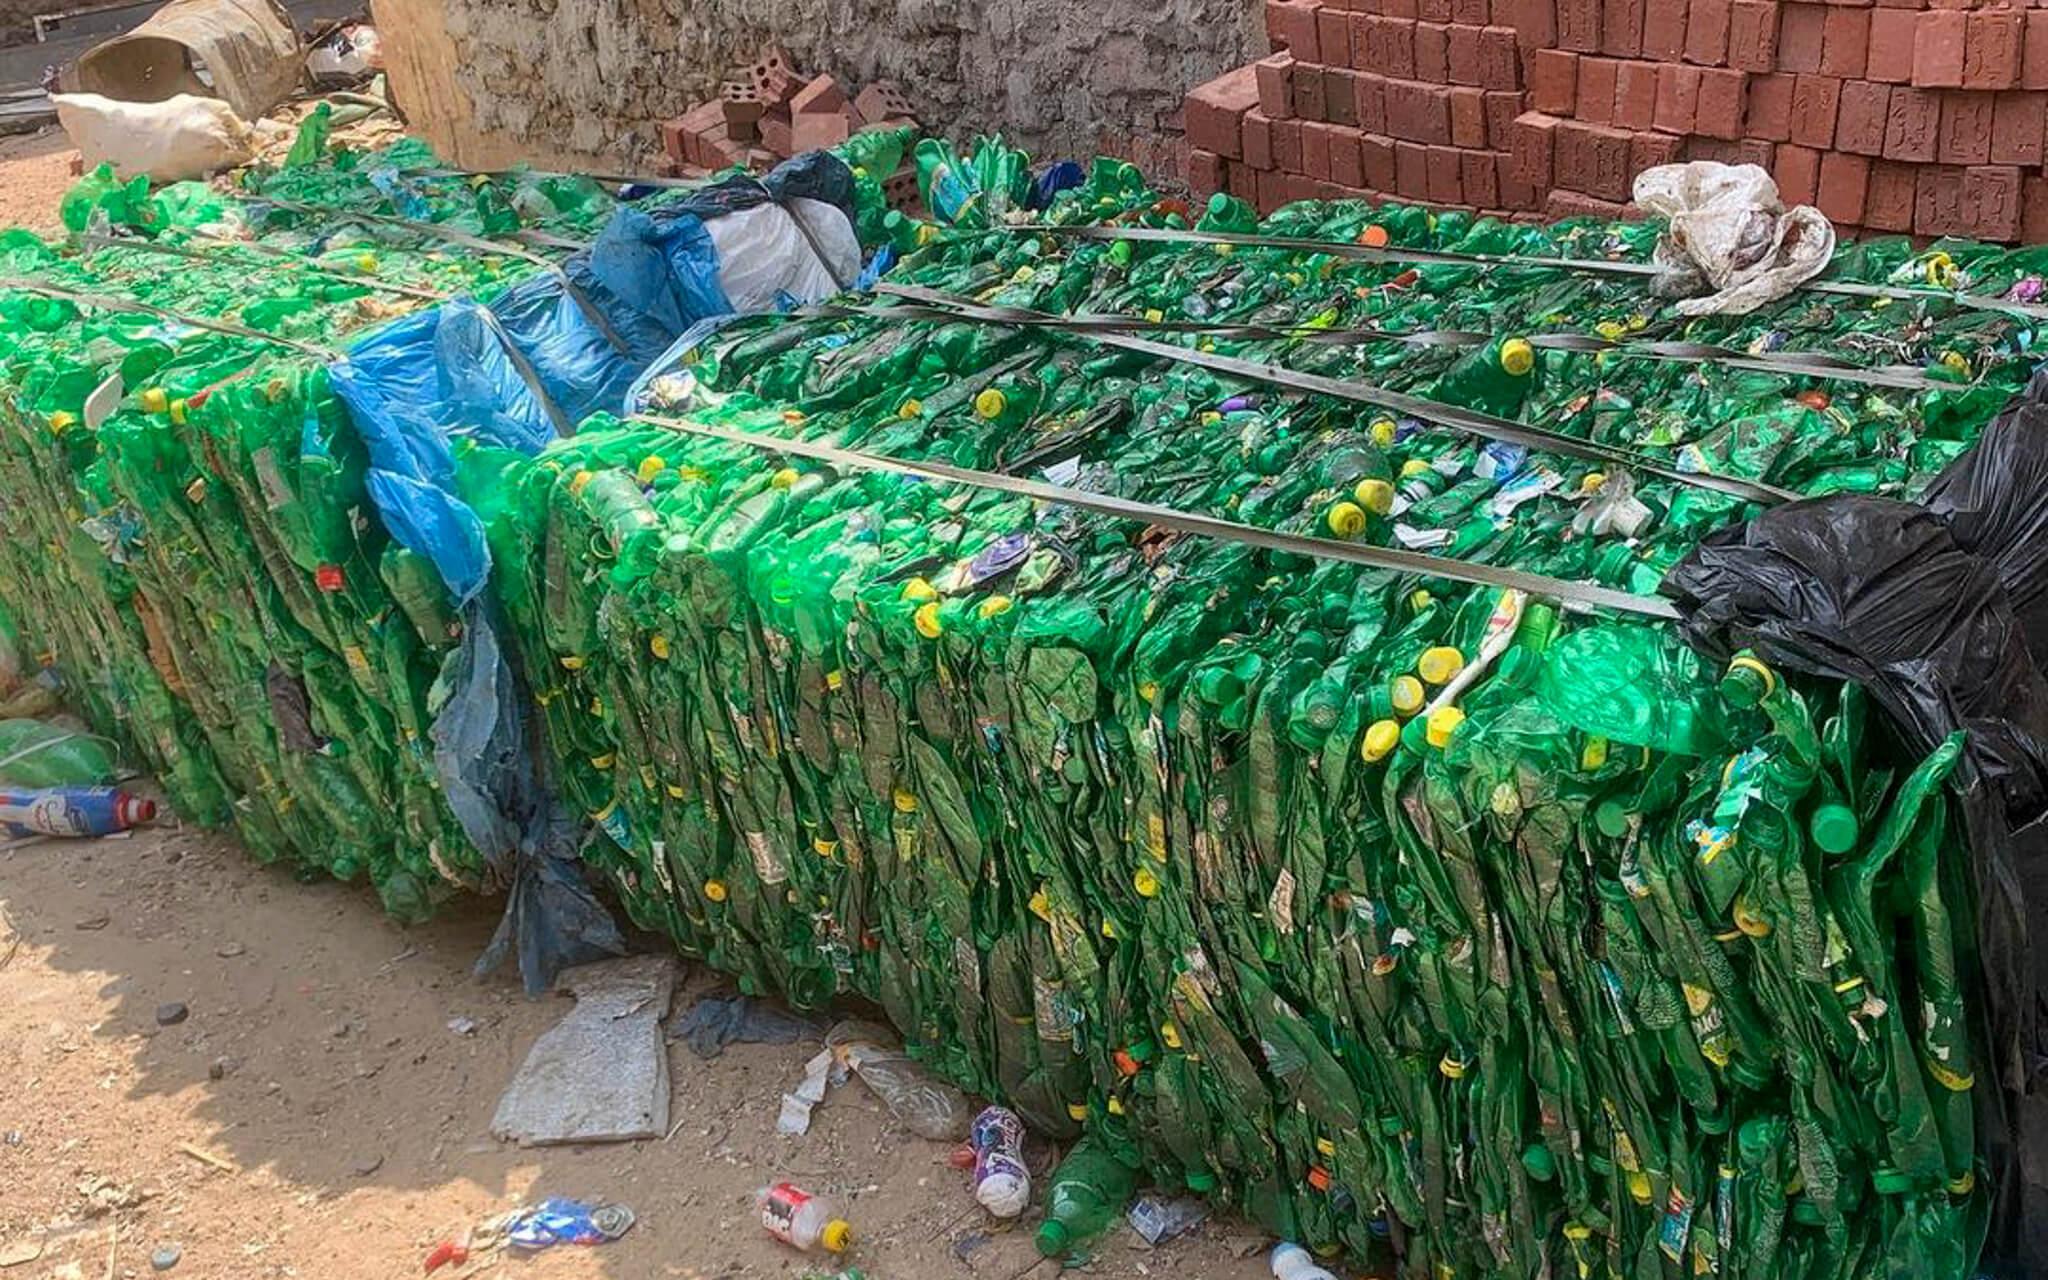 جمع الزجاجات البلاستيك وتجهيزها لدخول الكسارة 
 تصوير: صهيب رسمي